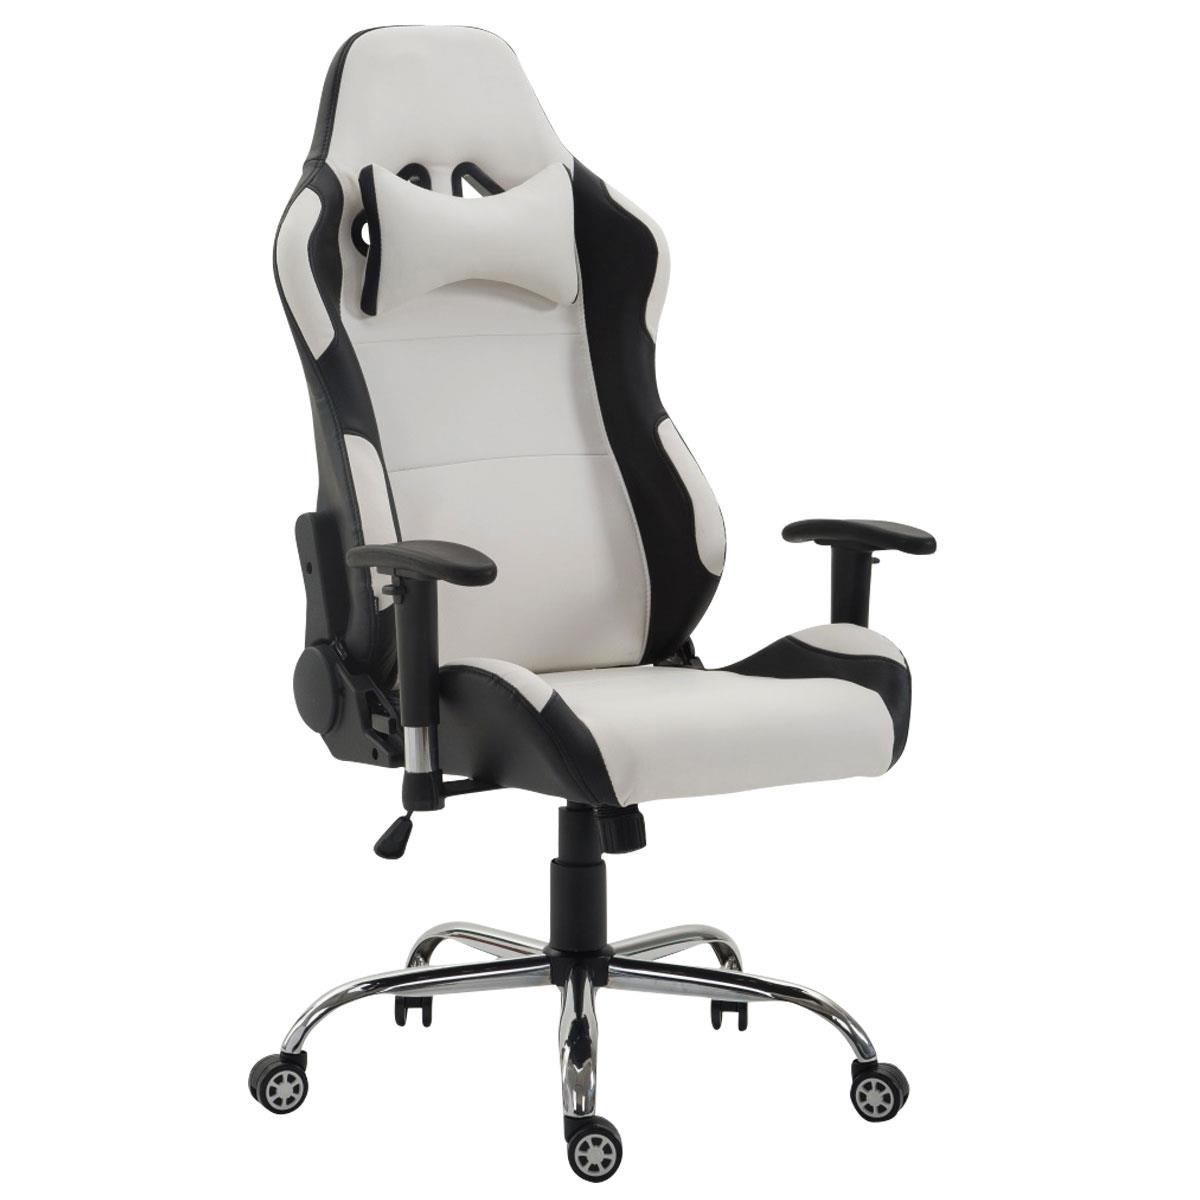 Gaming-Stuhl ROSBY. Sportliches Design und hoher Komfort, Lederbezug, Farbe Weiß